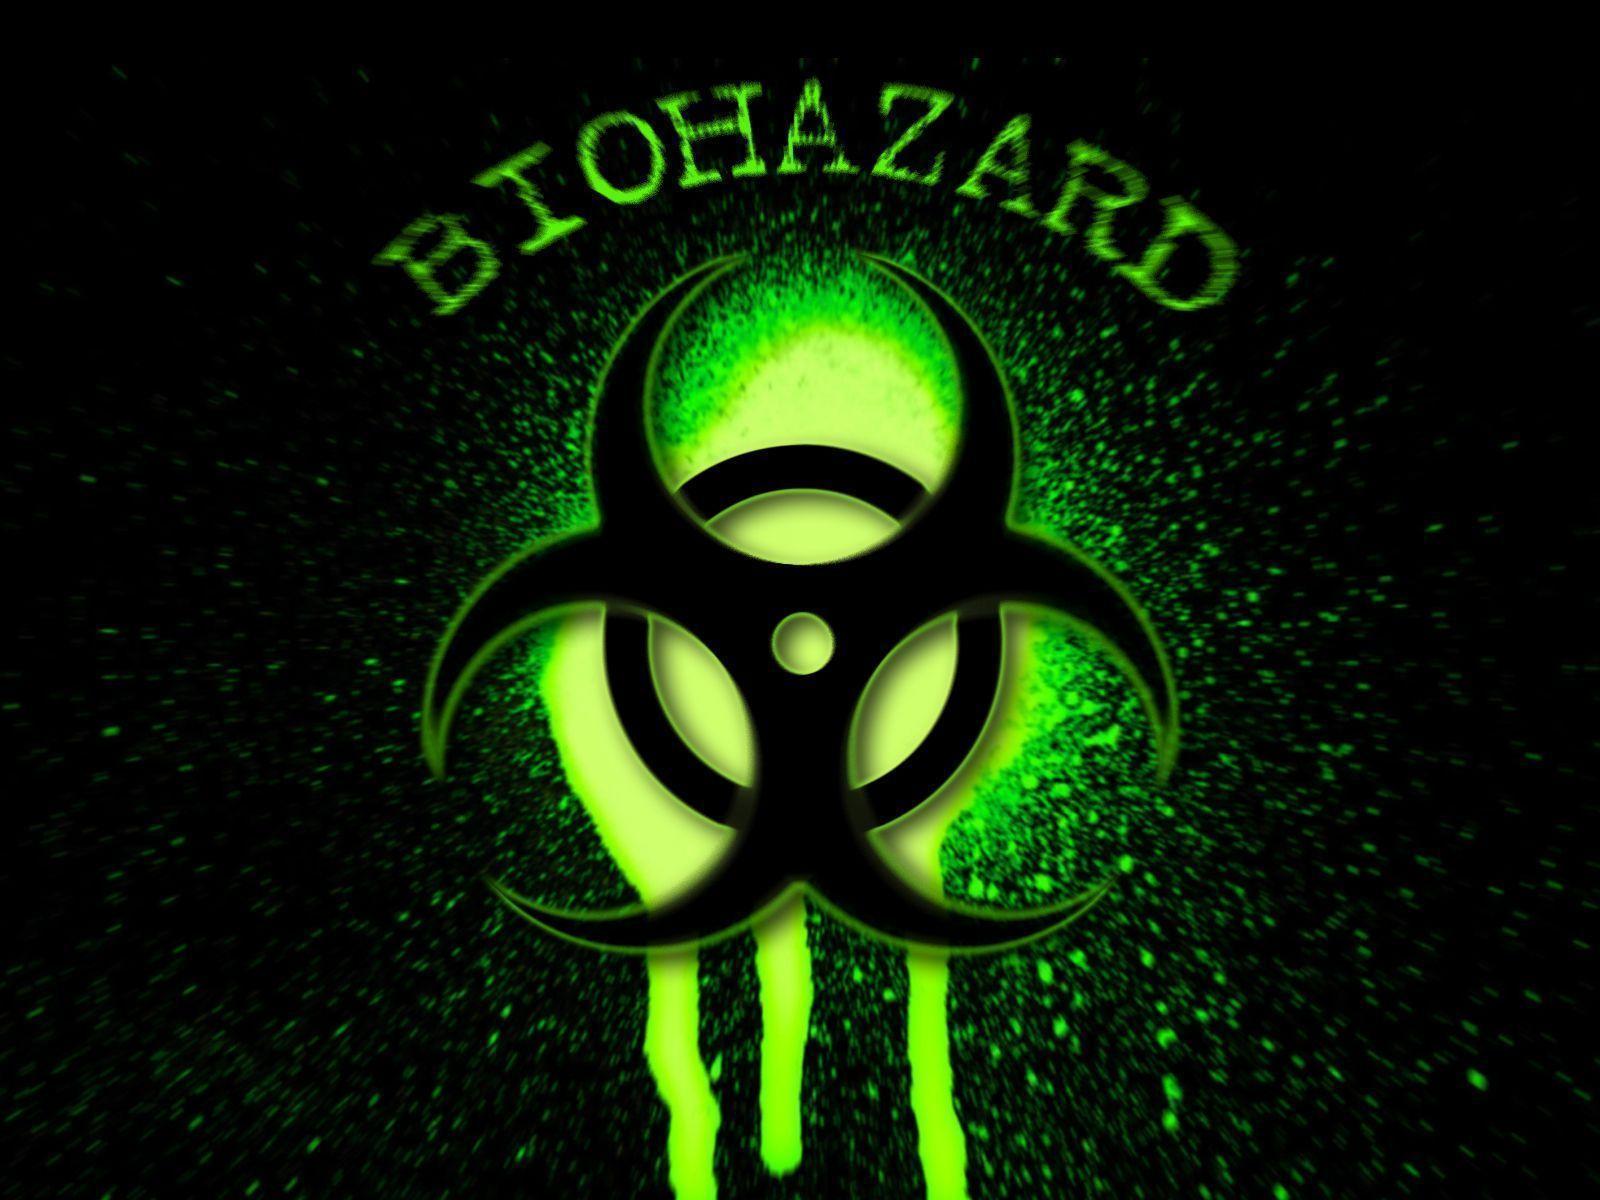 Logos For > Biohazard Sign Wallpaper